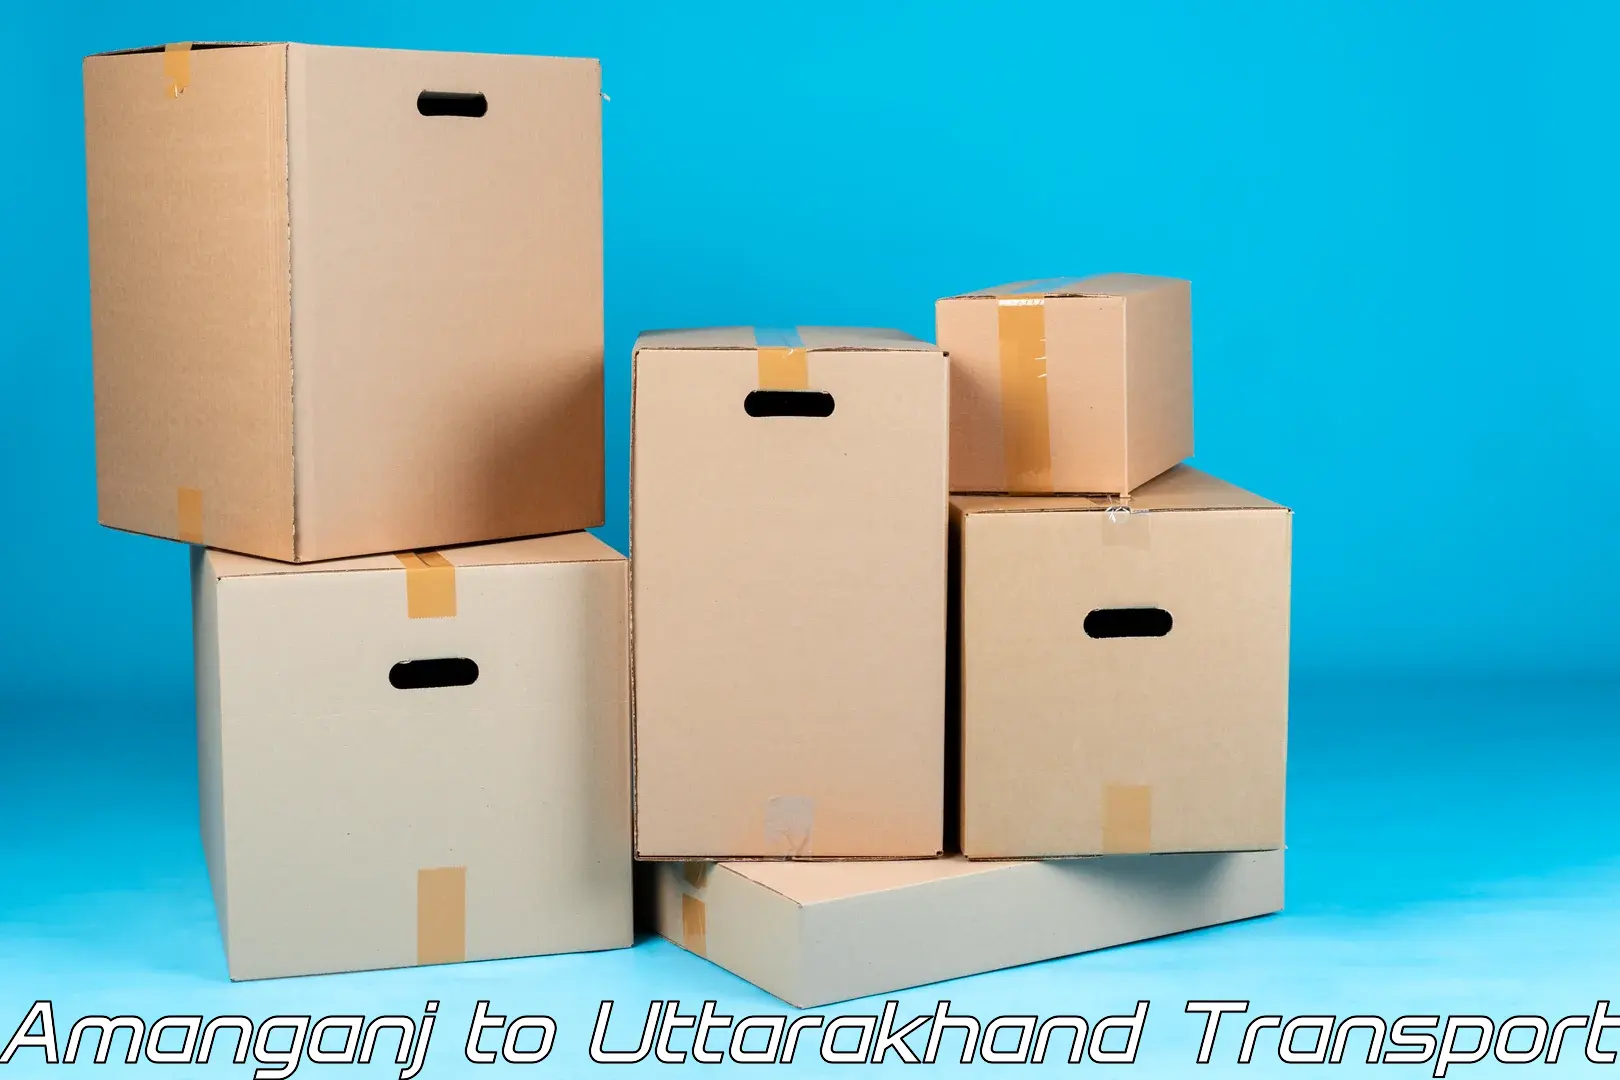 Furniture transport service Amanganj to Uttarakhand